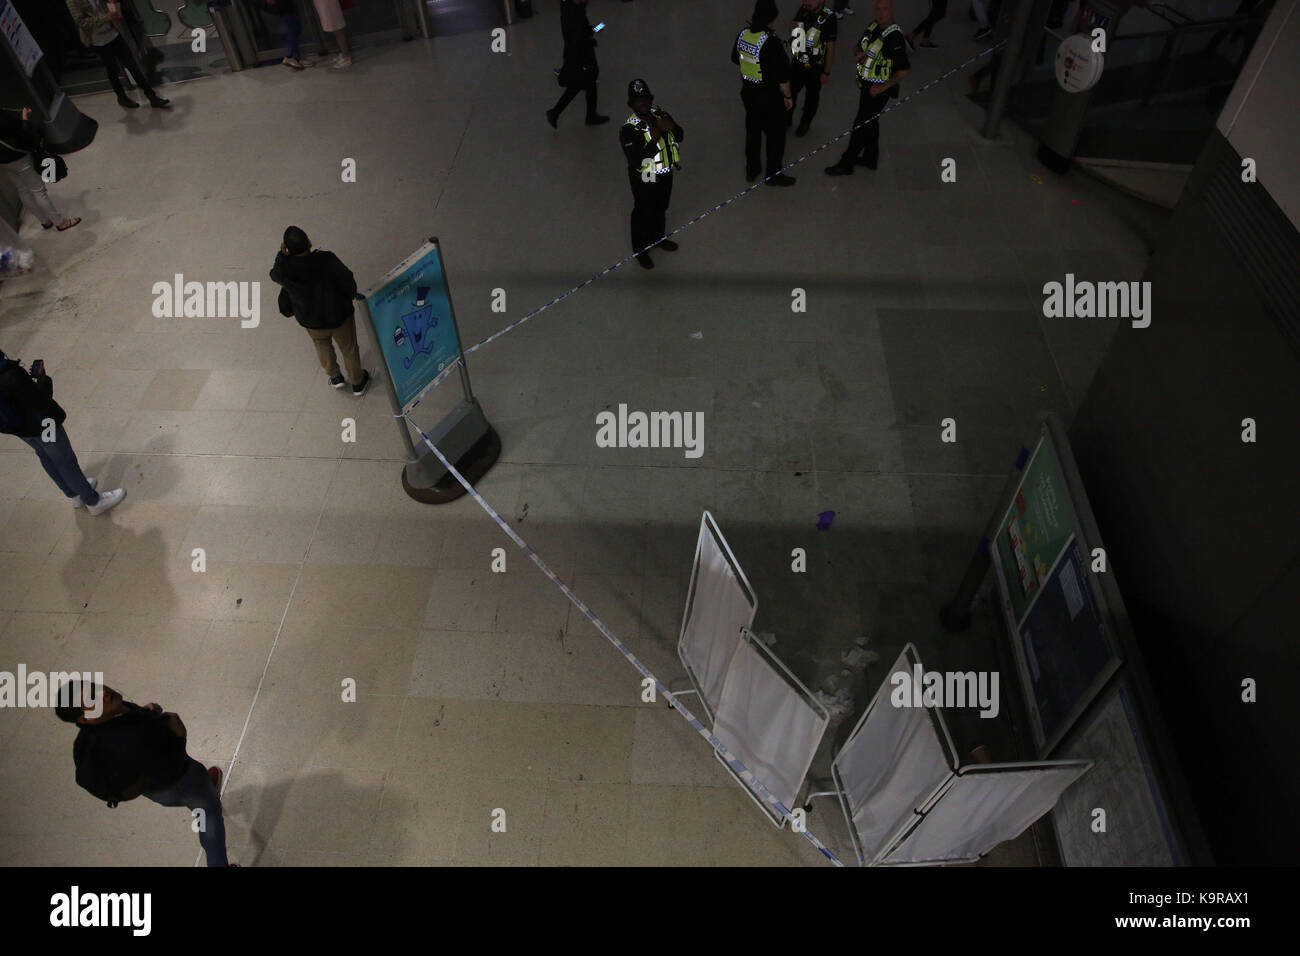 Notdienste am Bahnhof Stratford East London, nach einem Verdacht auf schädliche Substanz angreifen, wo sechs Menschen verletzt worden. Stockfoto